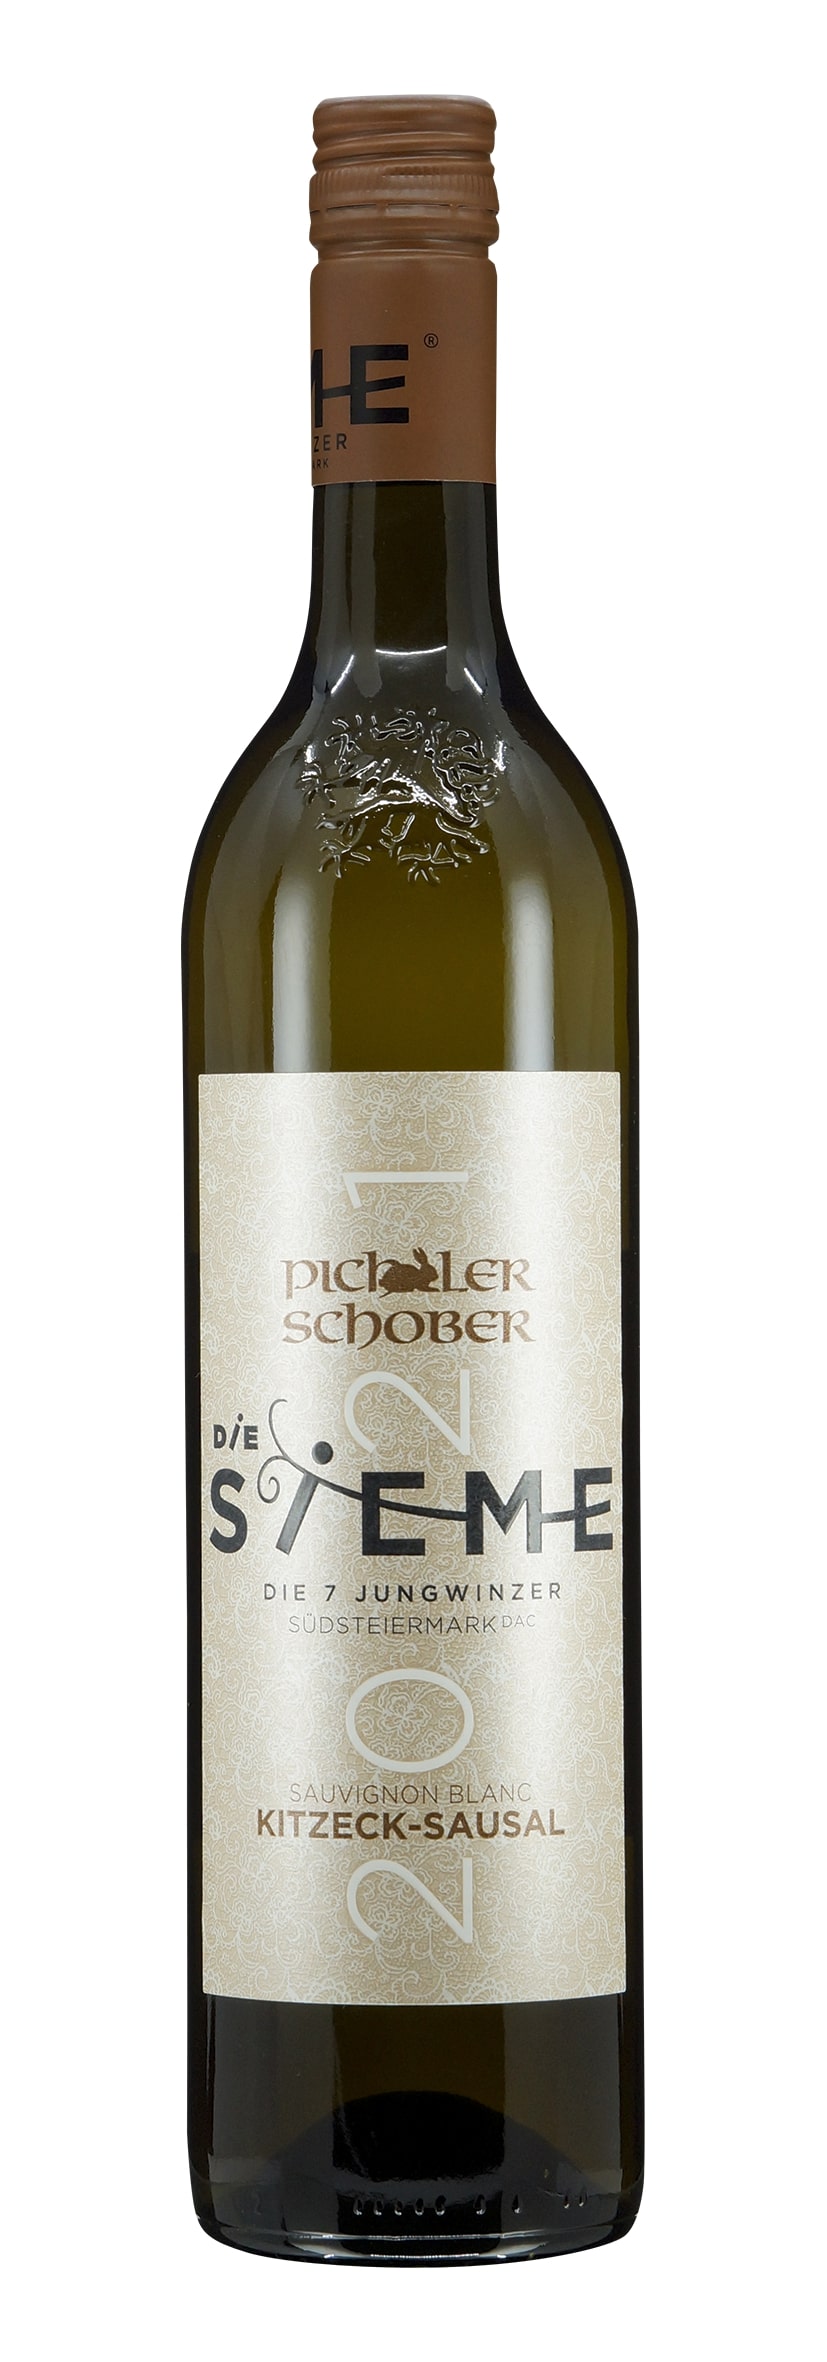 Südsteiermark DAC Kitzeck-Sausal Sauvignon Blanc Die Sieme 2021